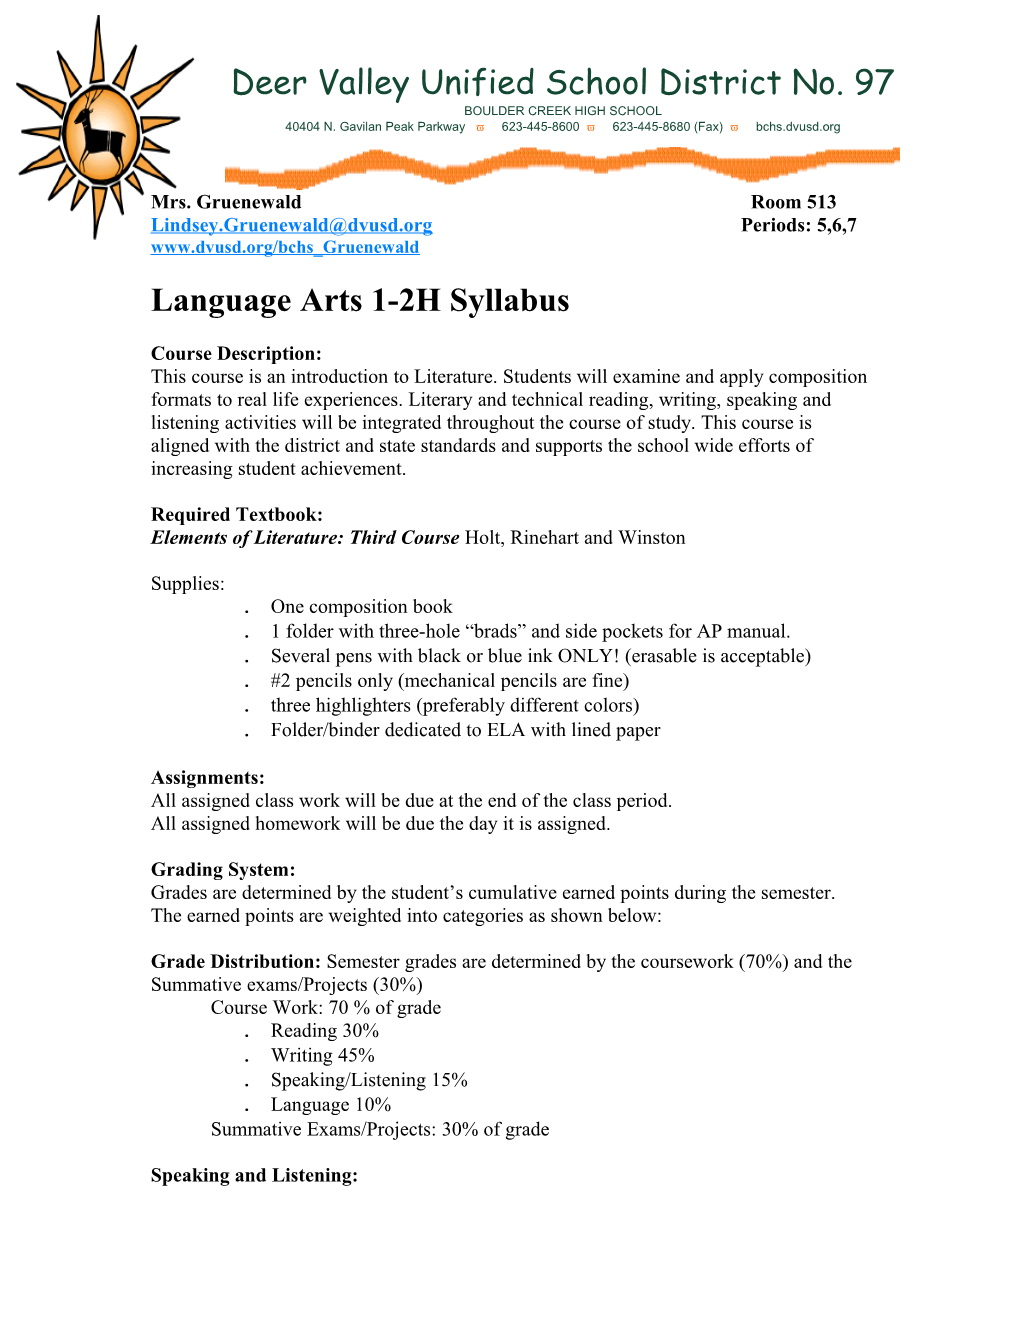 Language Arts 3-4 Syllabus